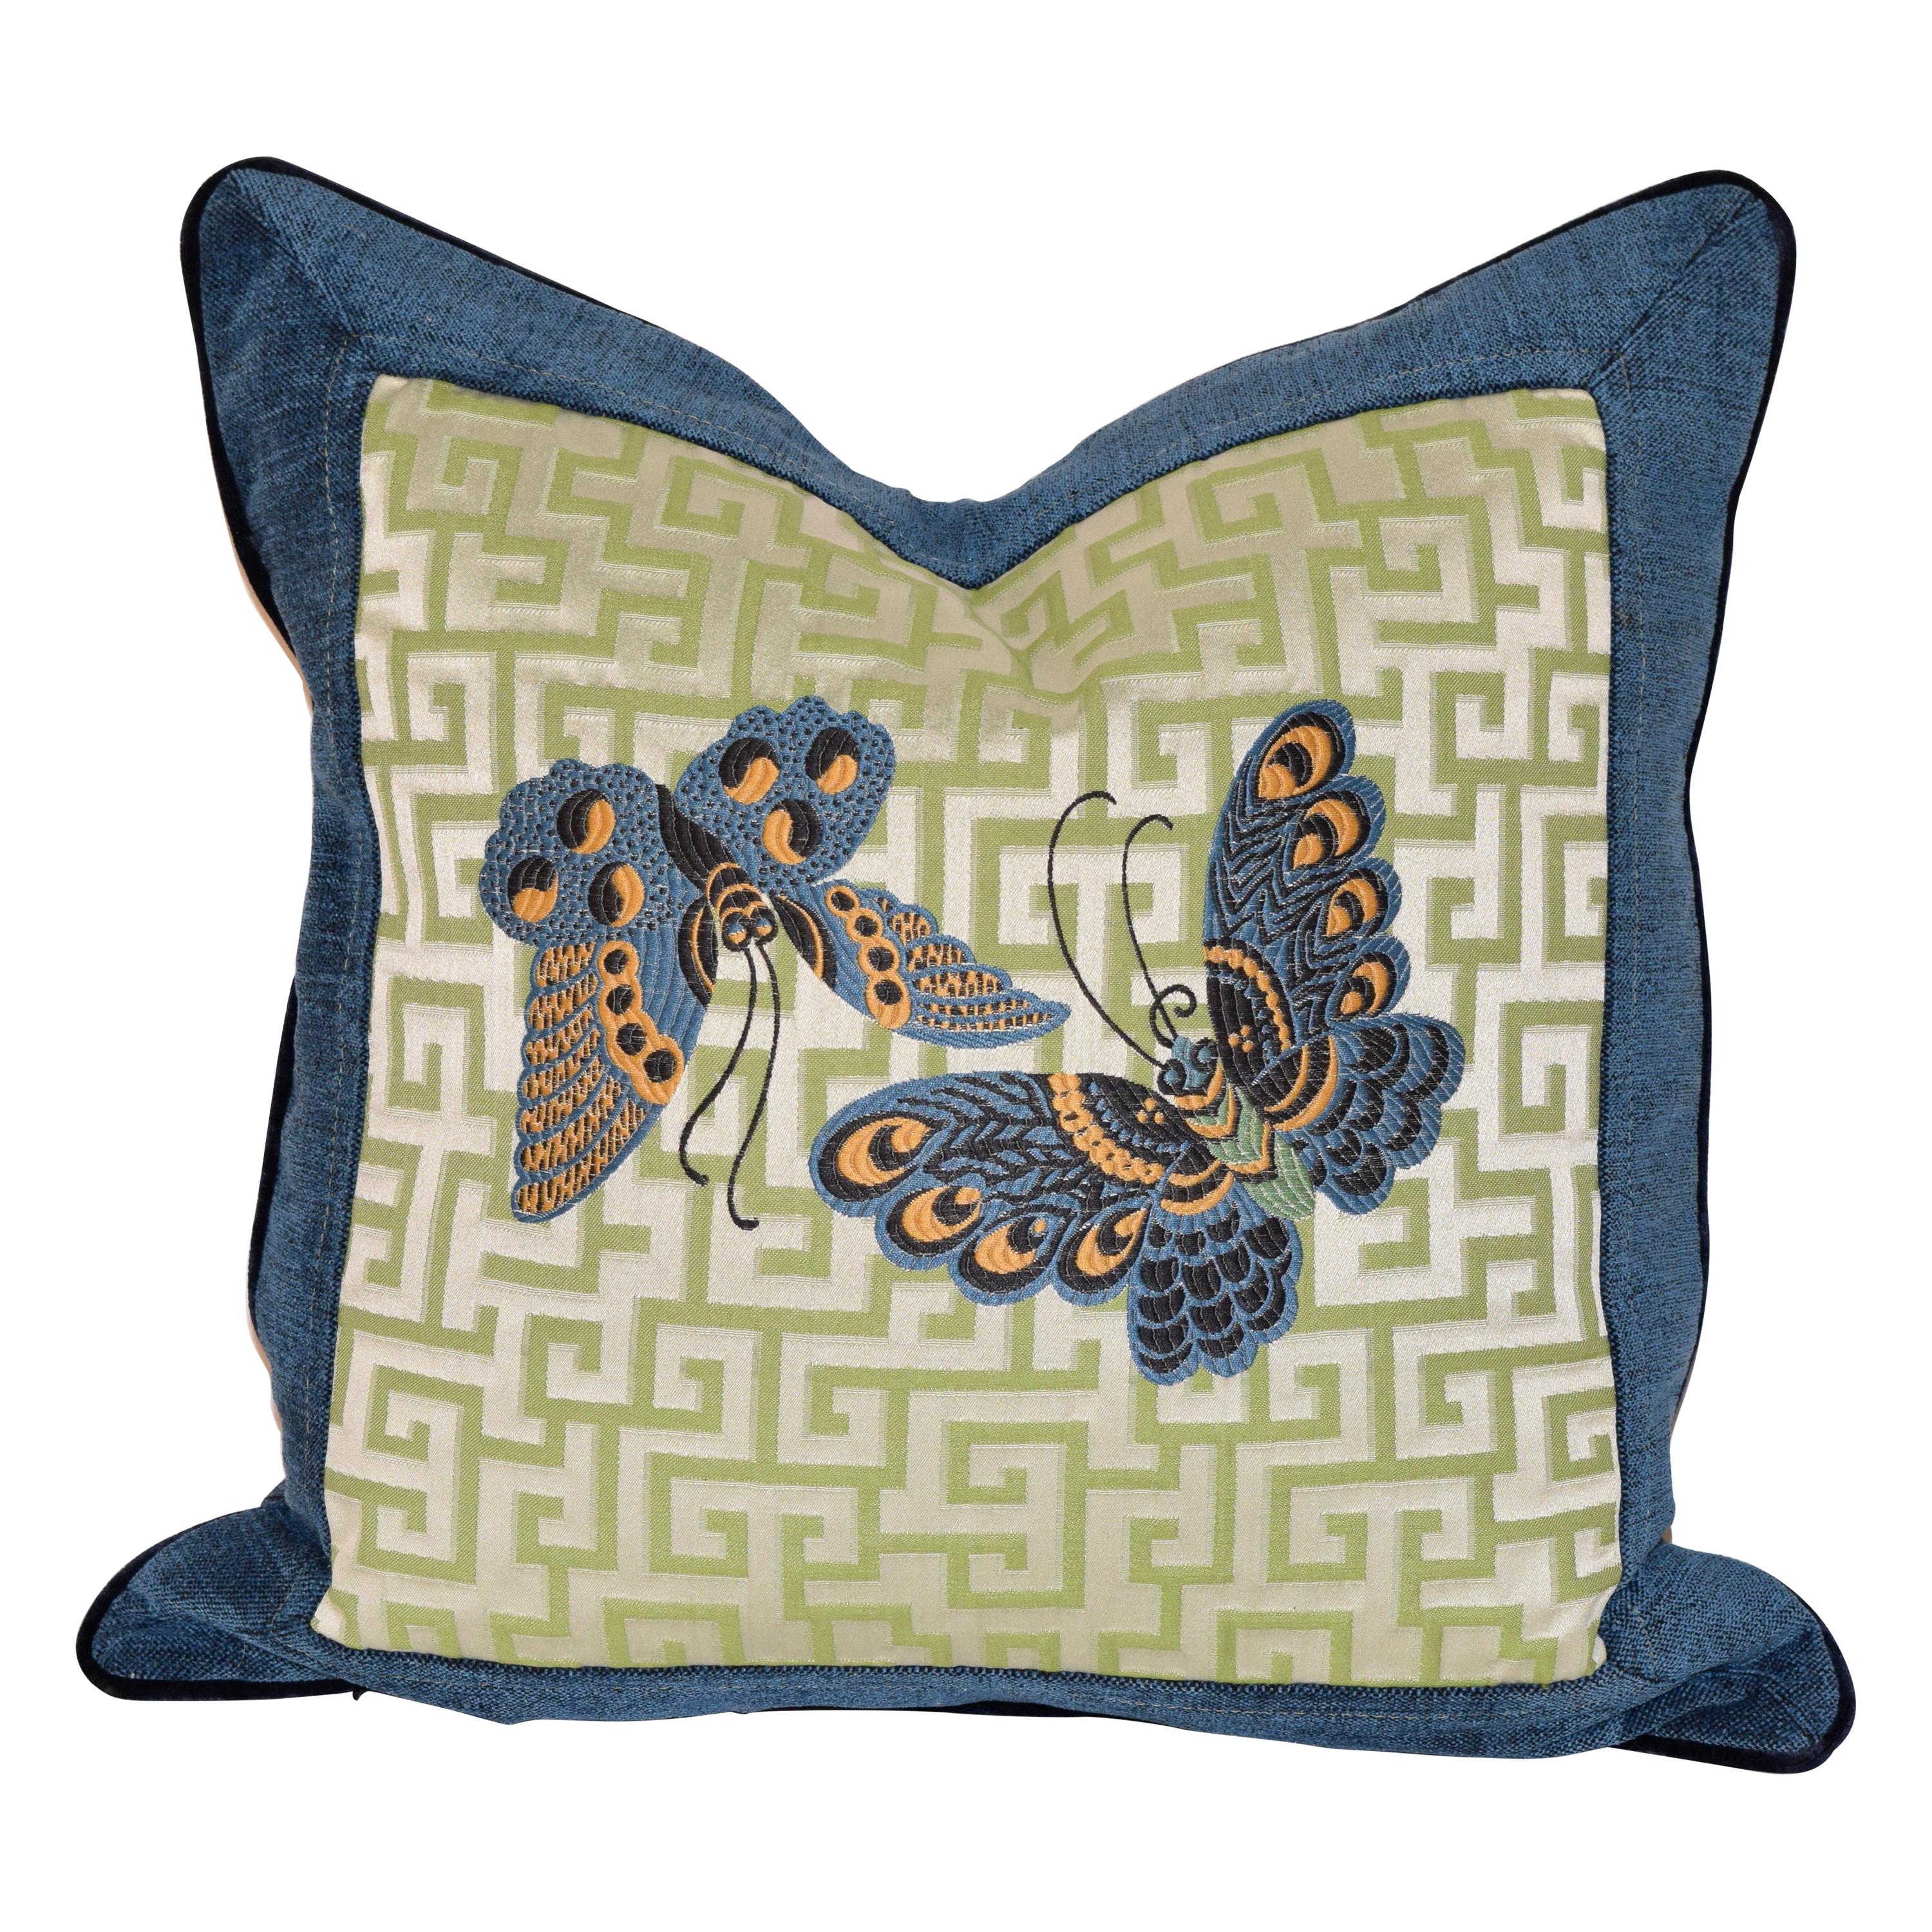 Woven Geometric Butterfly Pillow